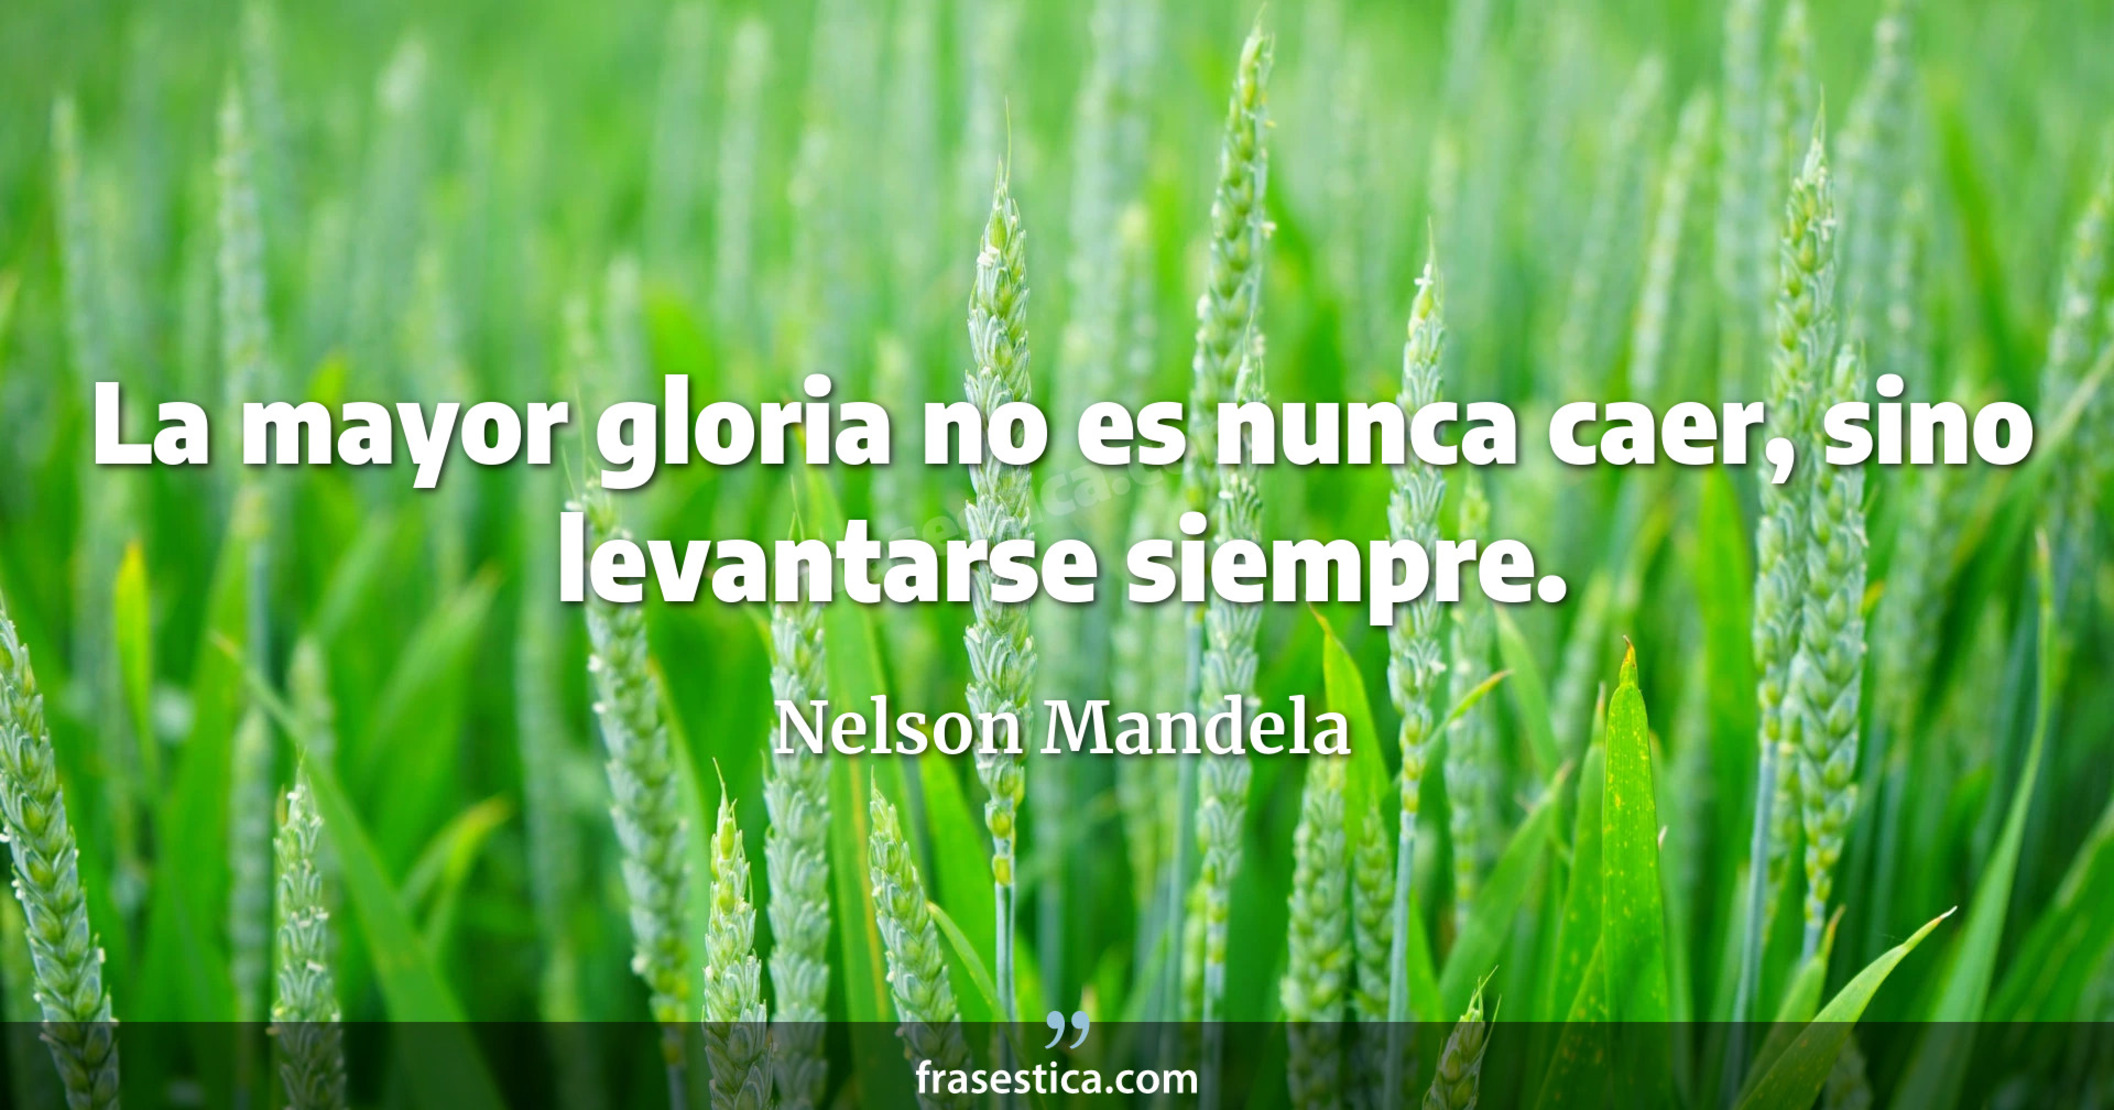 La mayor gloria no es nunca caer, sino levantarse siempre. - Nelson Mandela